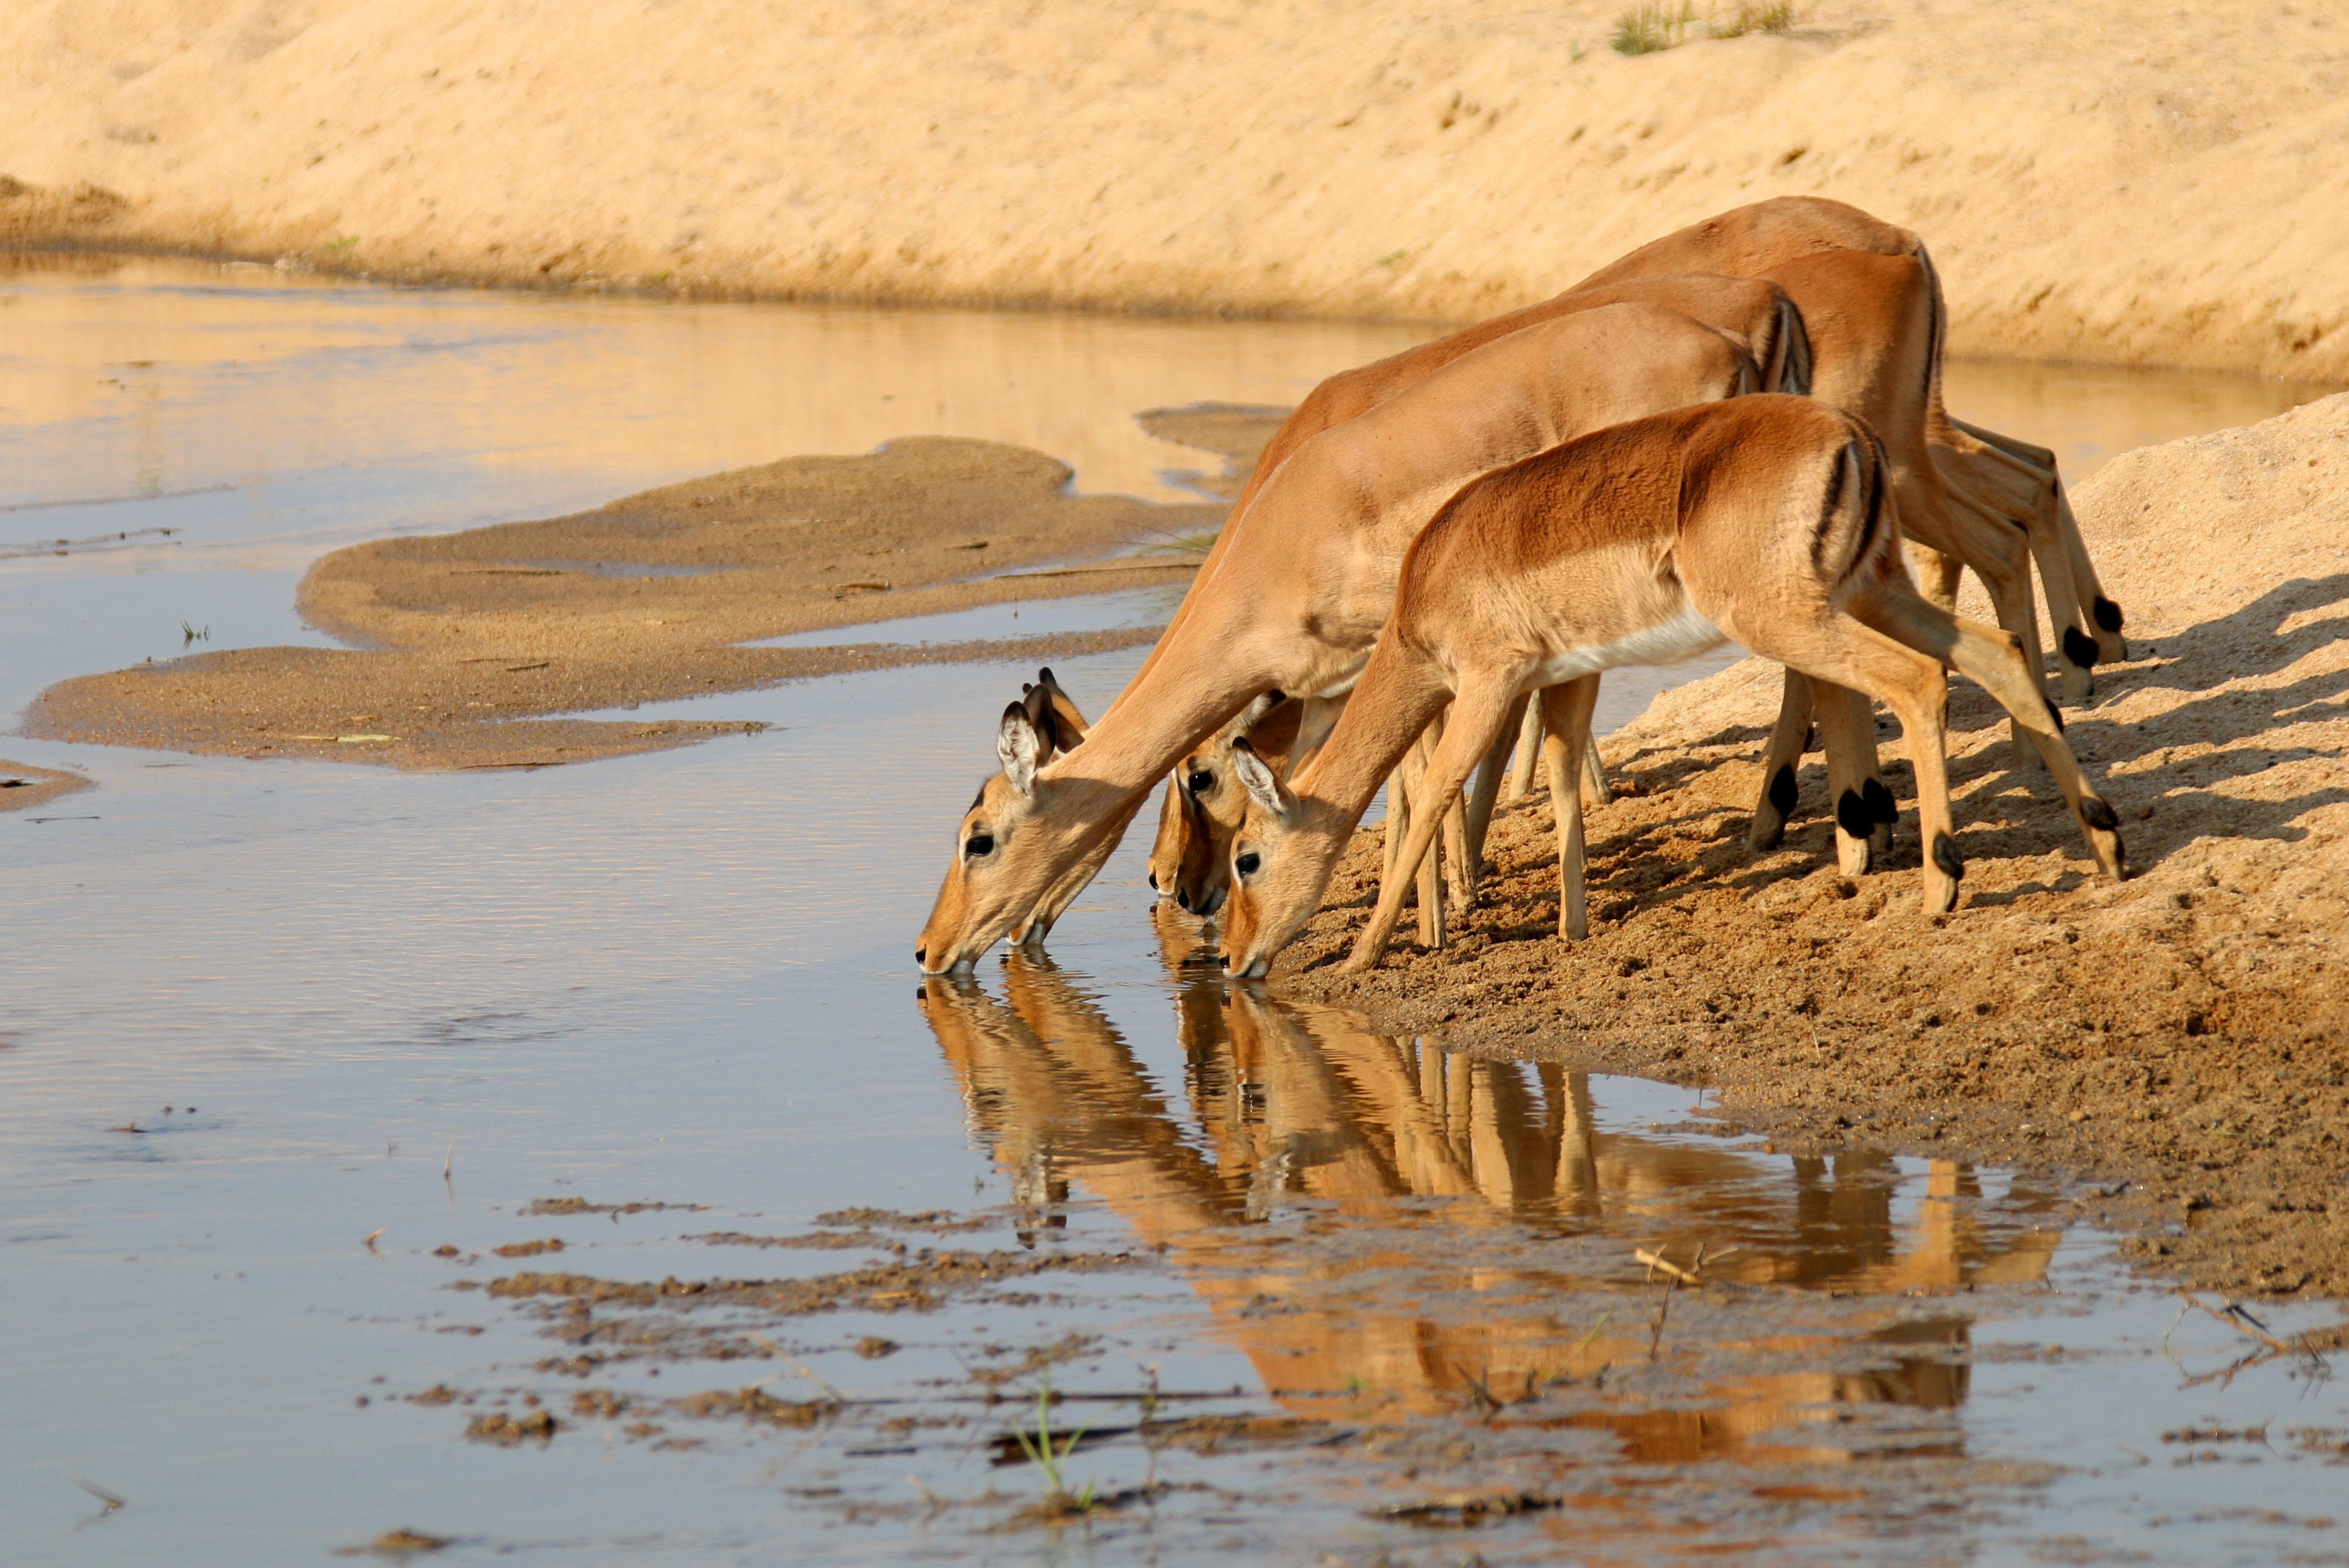 Female Gazelle drinking from a waterhole in Africa by WiseTraveller